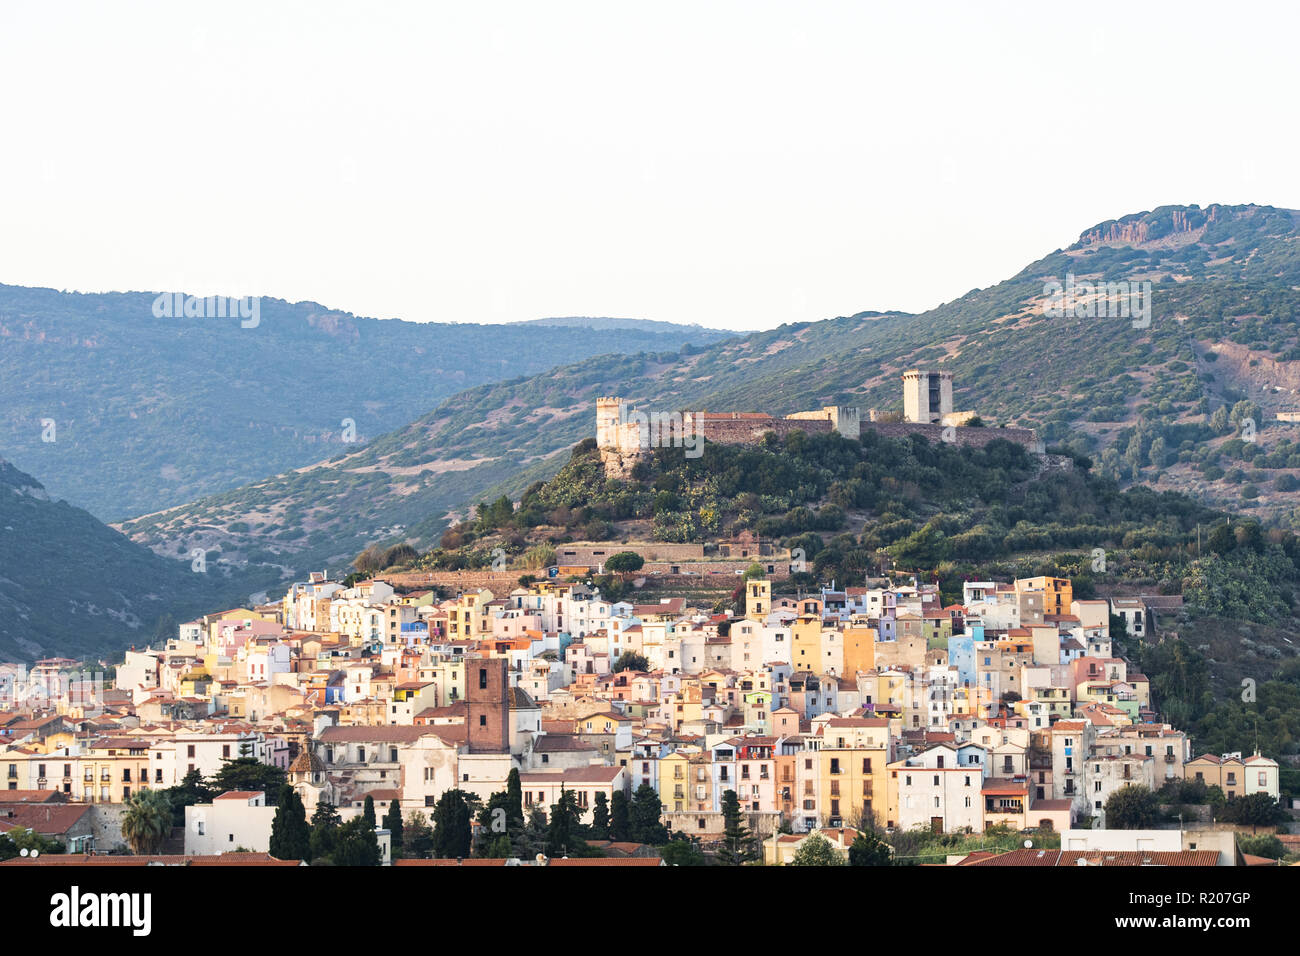 Das schöne Dorf von Bosa mit bunten Häusern und eine mittelalterliche Burg auf dem Gipfel des Hügels. Bosa liegt im Nordwesten von Sardinien, Italien. Stockfoto